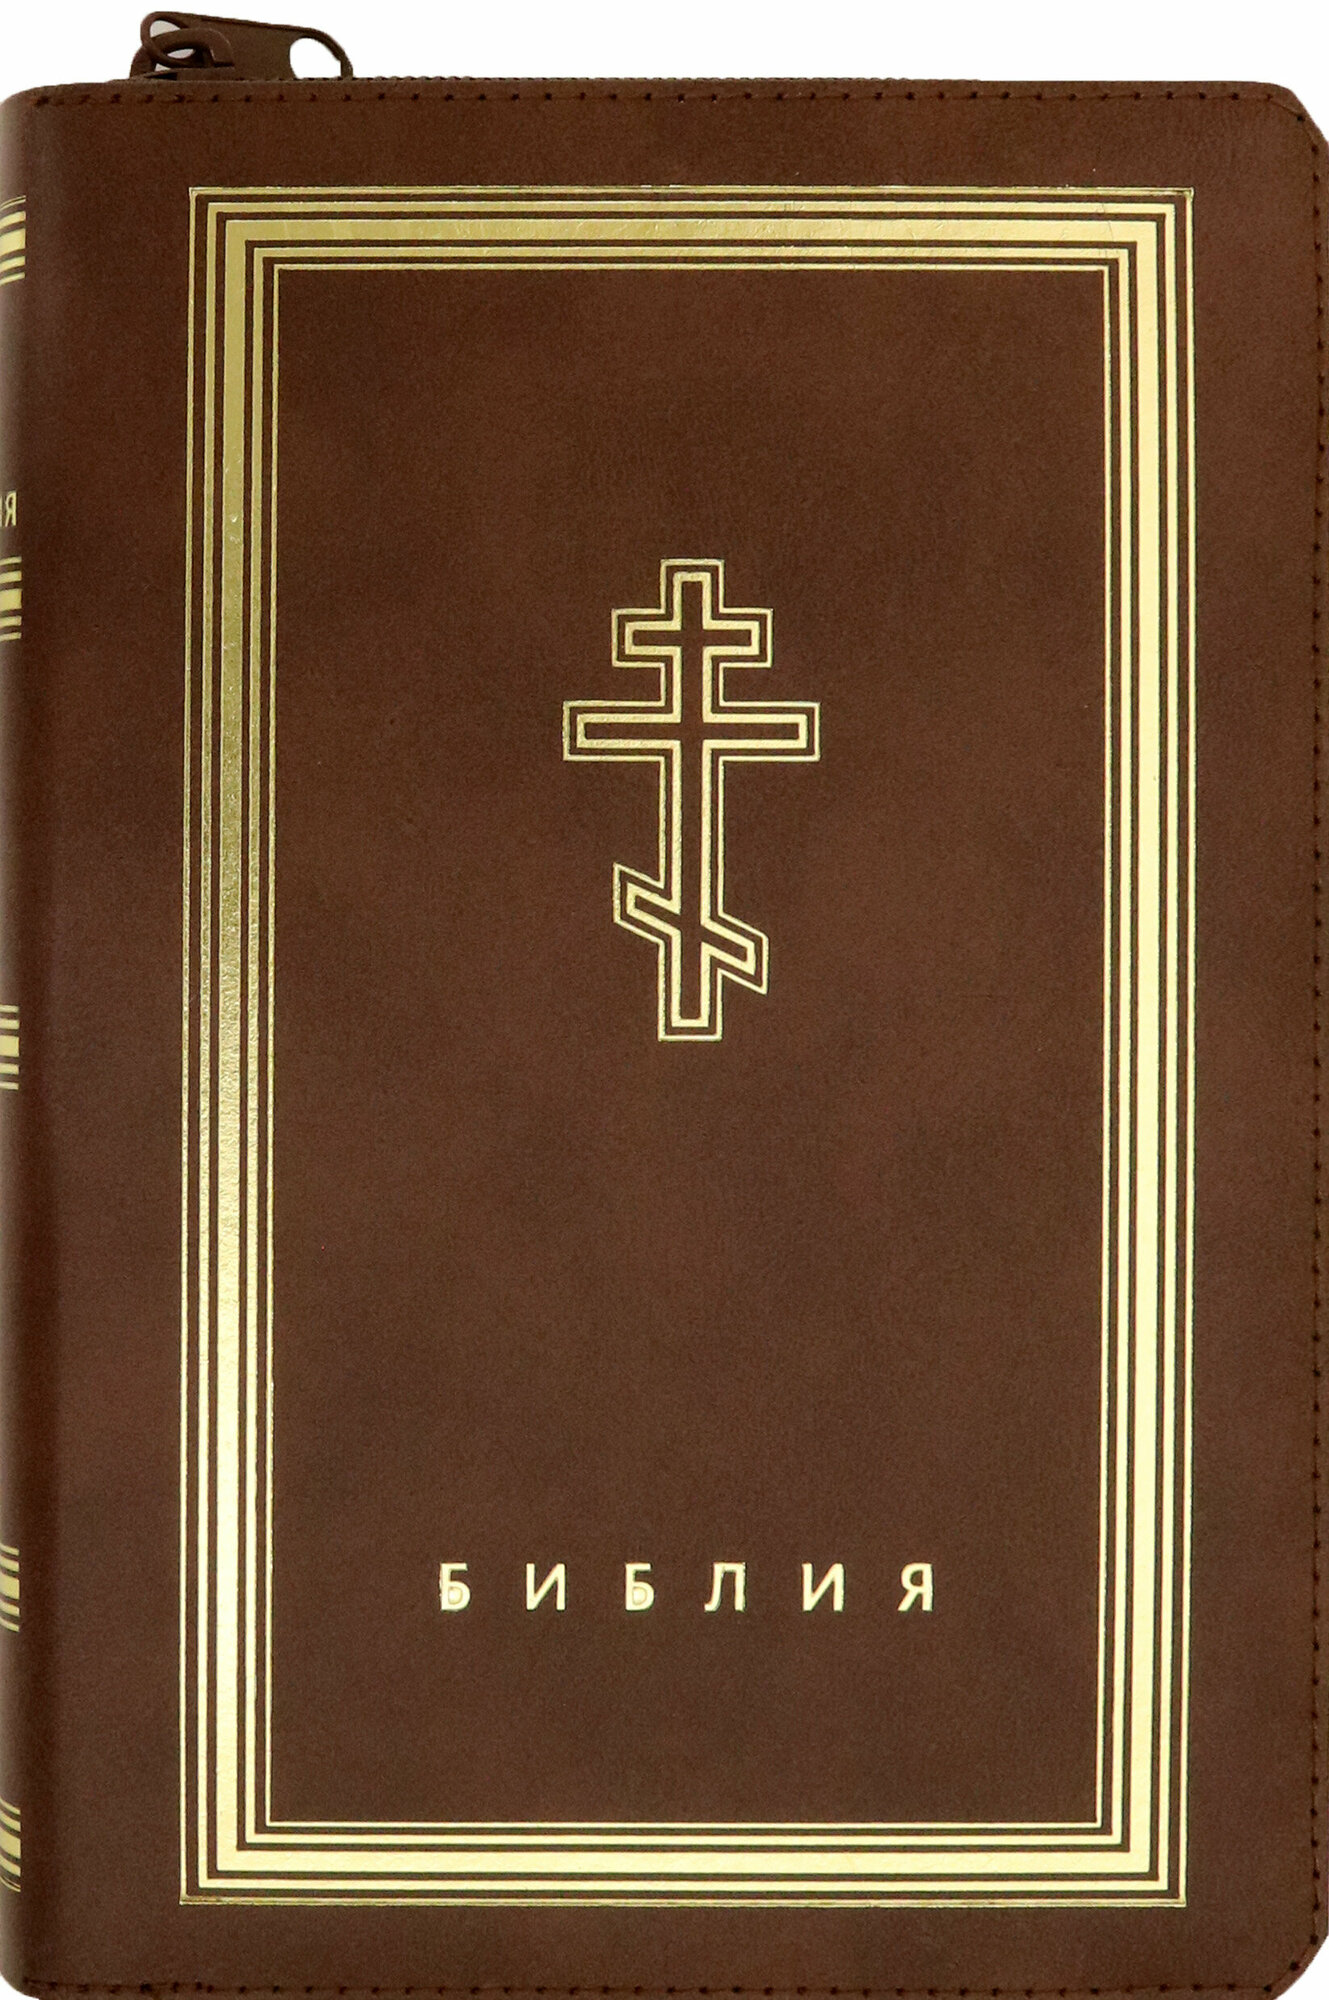 Библия (коричневая кожаная на молнии, золотой обрез) - фото №19